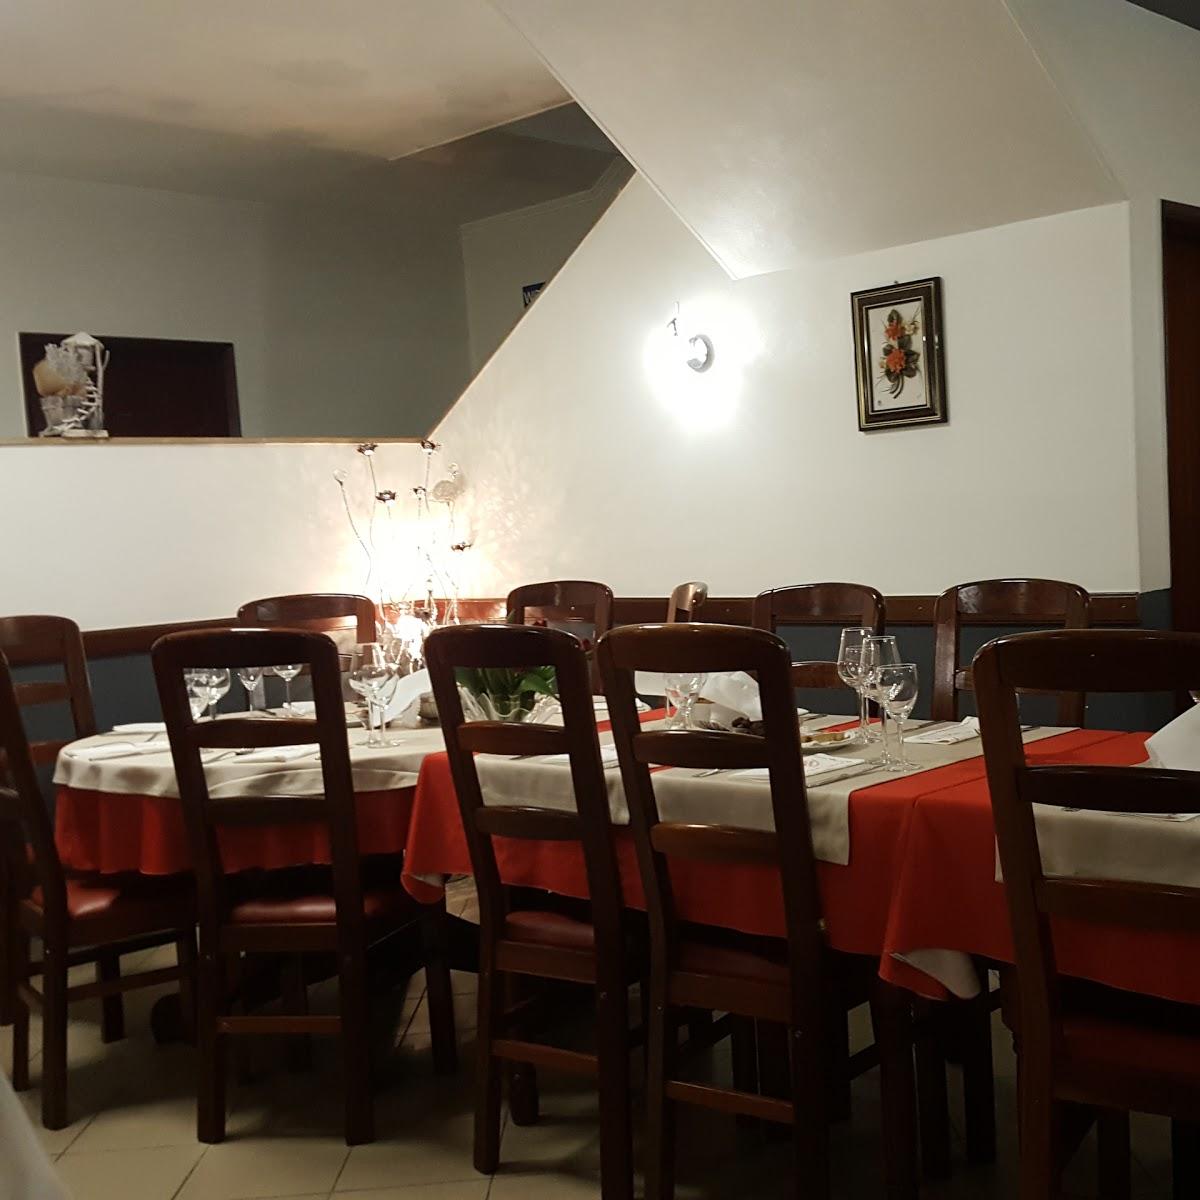 Restaurant "Restaurant Welcome" in Esch-sur-Alzette